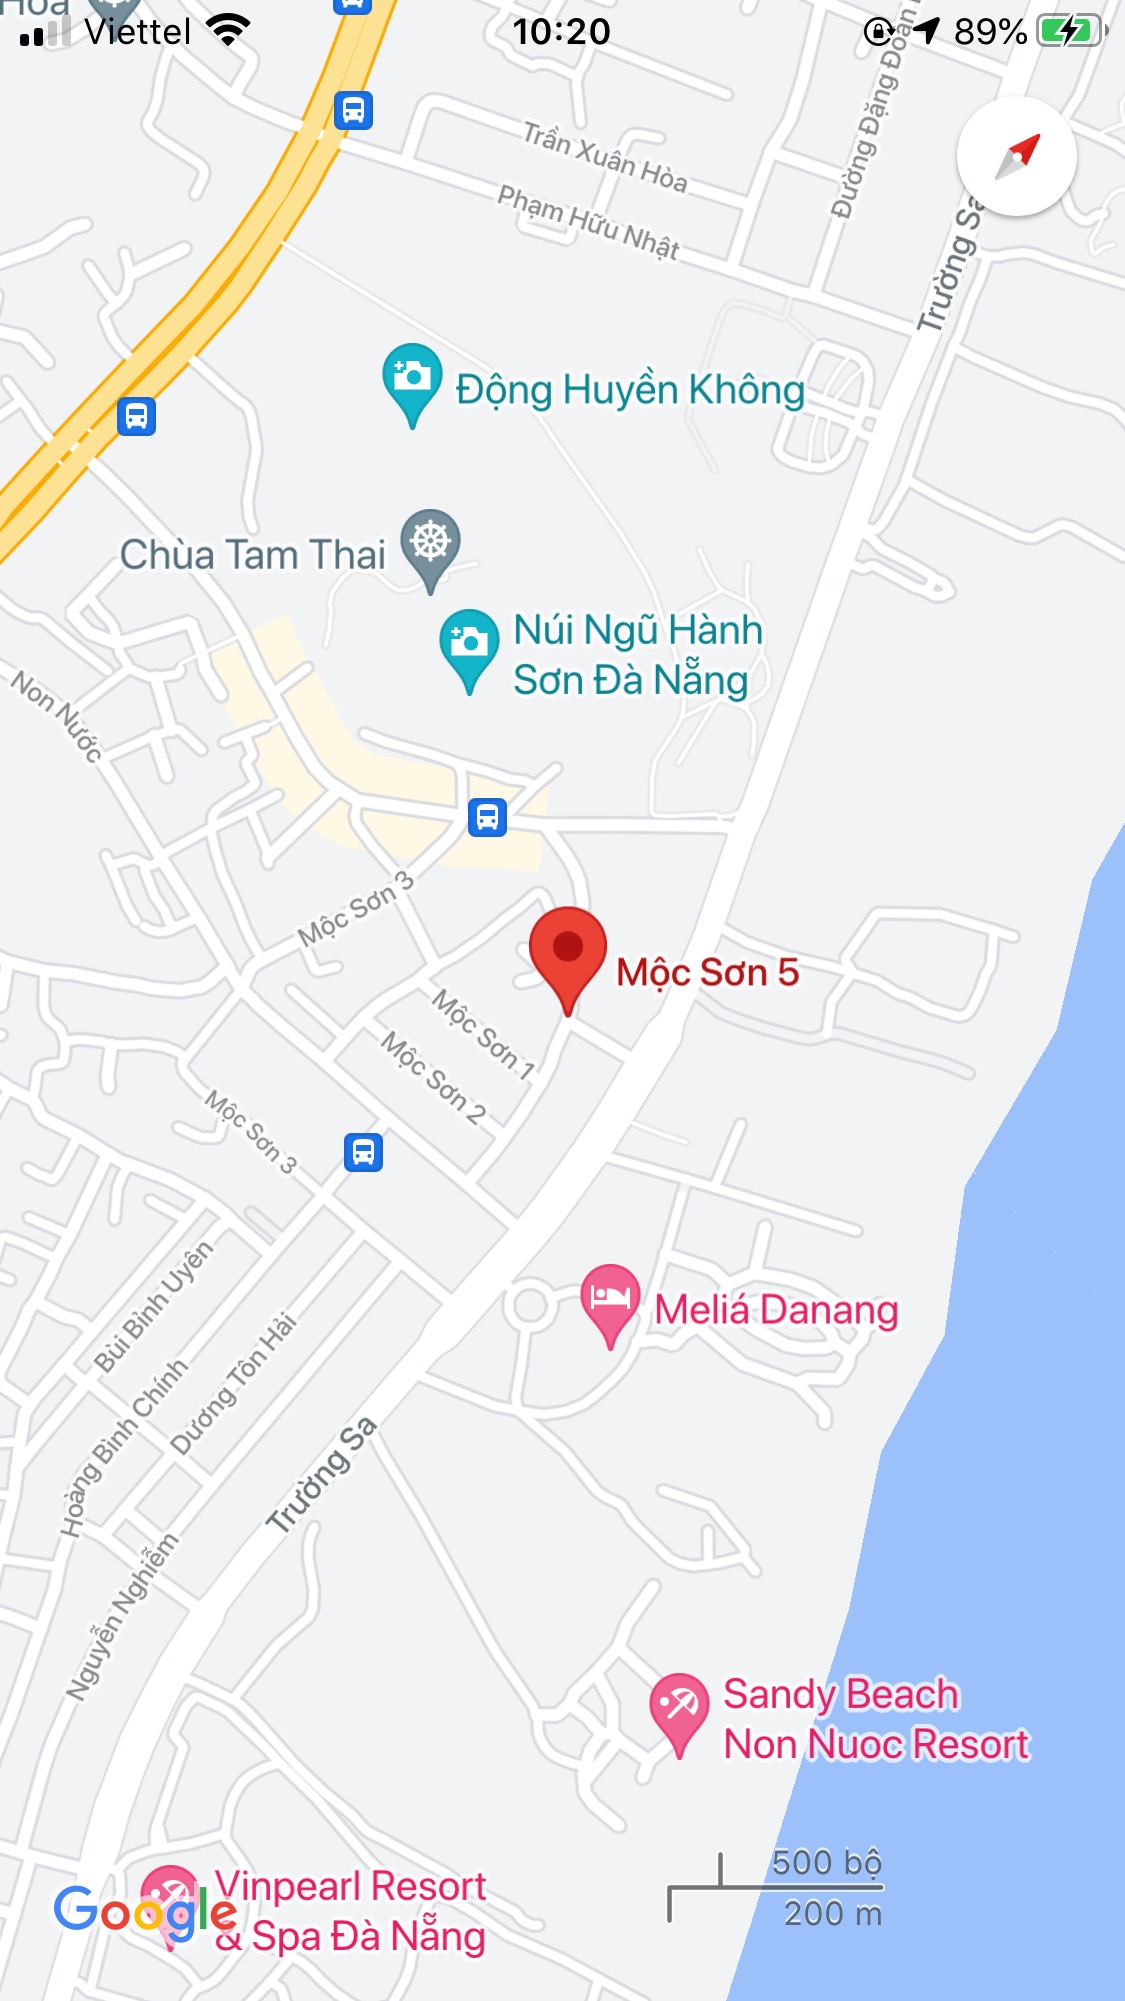 Bán nhà mặt tiền đường Mộc Sơn 5, Phường Hòa Quý, Quận Ngũ Hành Sơn, DT: 100 m2. Giá 7,7 tỷ